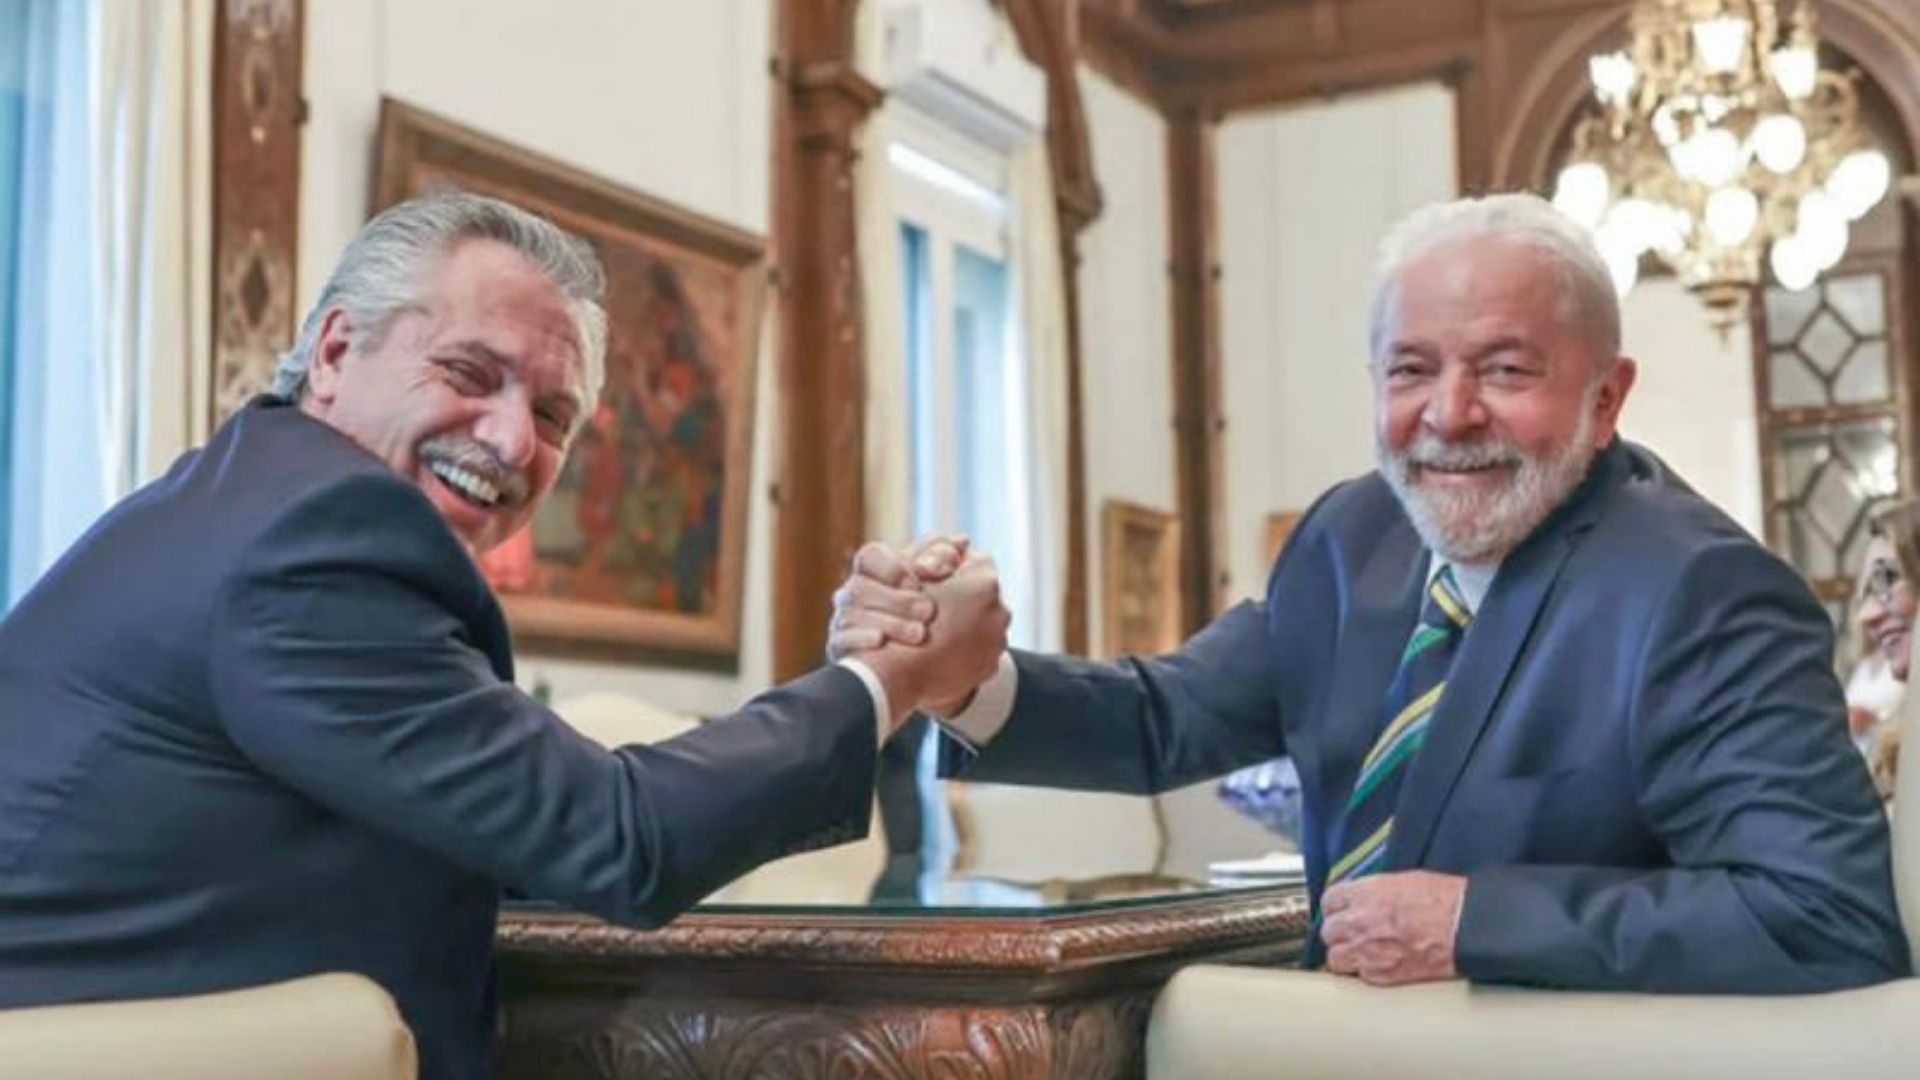 Foto do ex-presidente Lula ao lado de Alberto Fernández. Eles estão sentados, sorriem em um aperto de mãos.